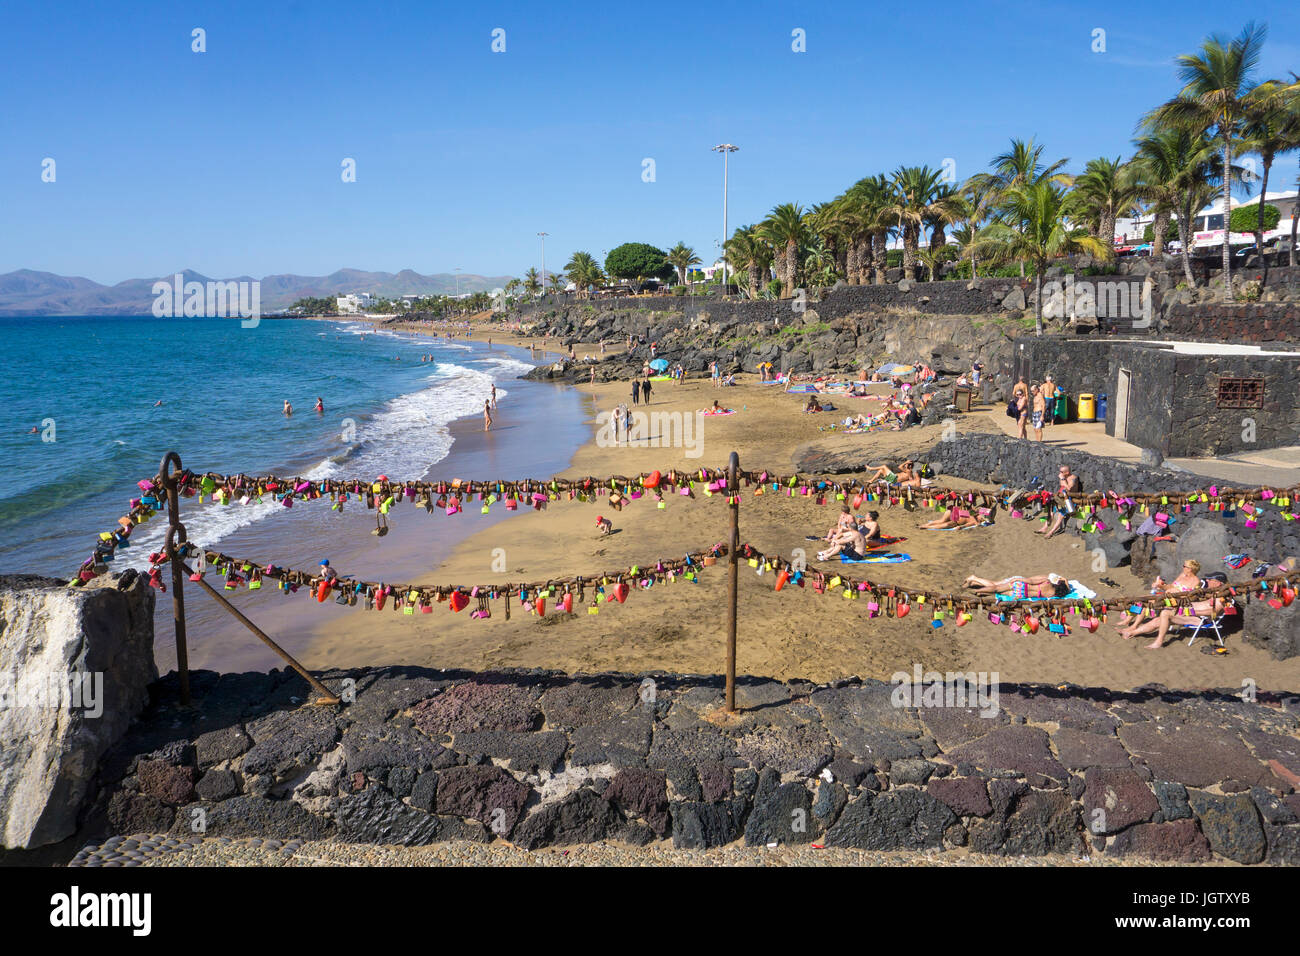 Liebe Schließfächer hängen an Ketten, Playa Grande, großen Strand von Puerto del Carmen, Lanzarote, Kanarische Inseln, Spanien, Europa Stockfoto